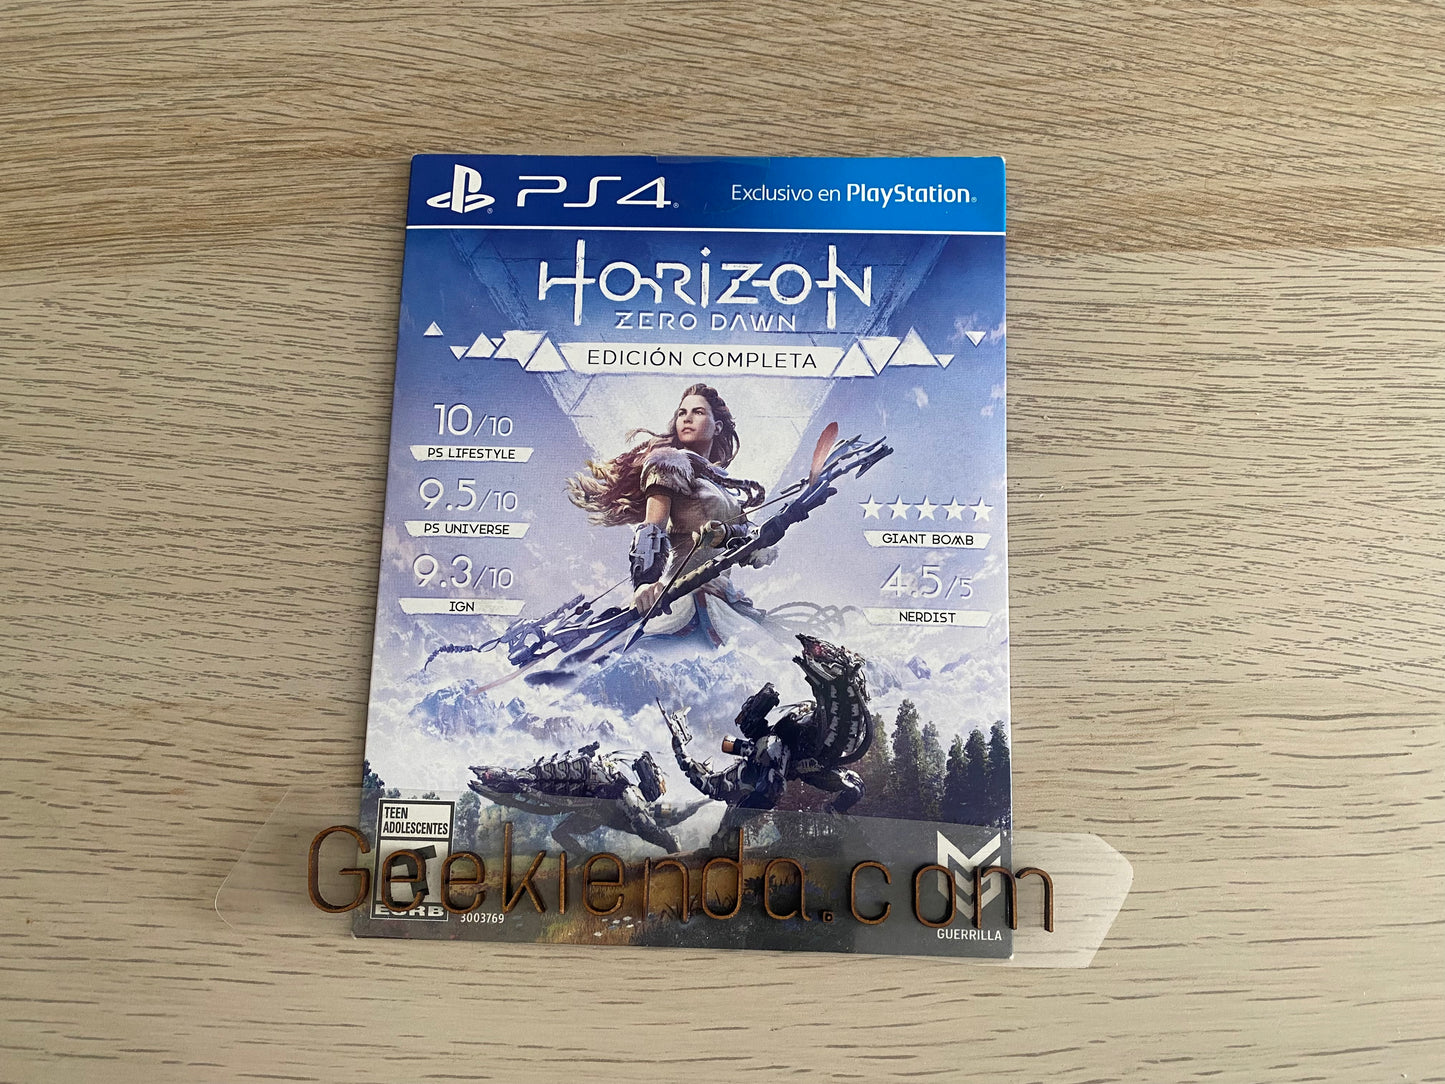 .Geekienda - Videojuegos juego Horizon zero dawn edición Copleta - PlayStation 4 ps4